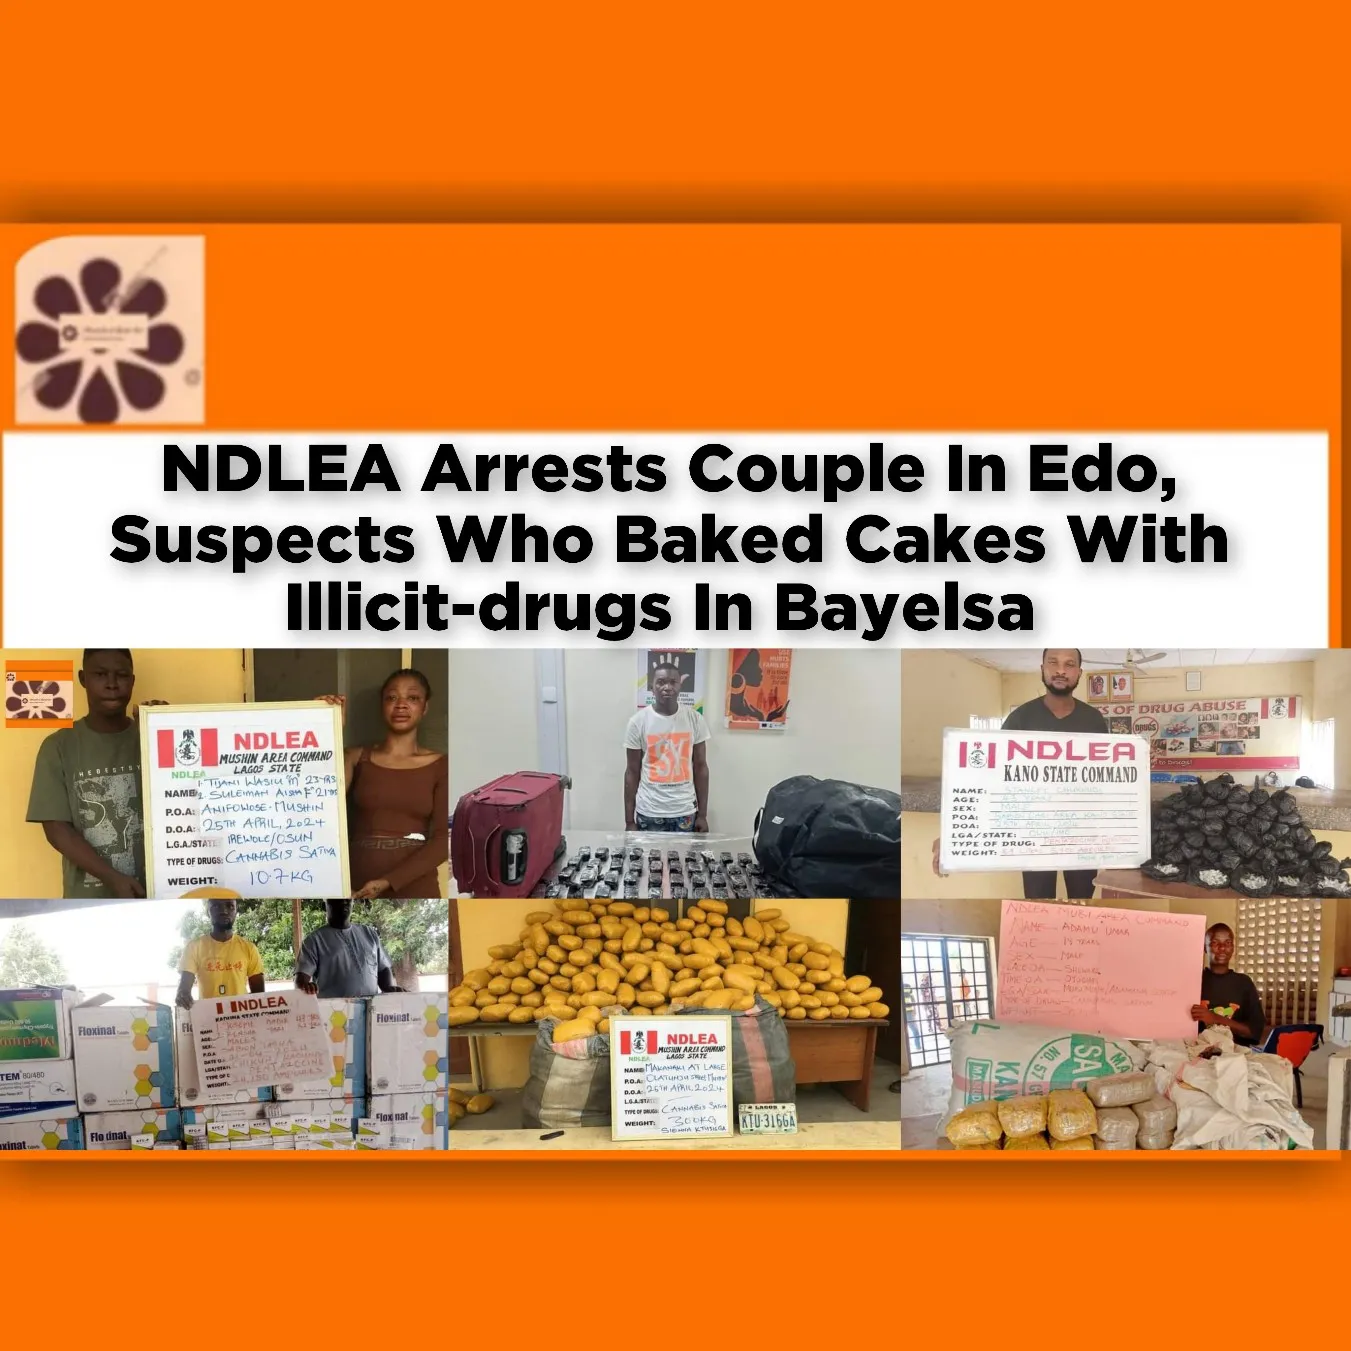 NDLEA Arrests Couple In Edo, Suspects Who Baked Cakes With Illicit-drugs In Bayelsa ~ OsazuwaAkonedo #Amaechi